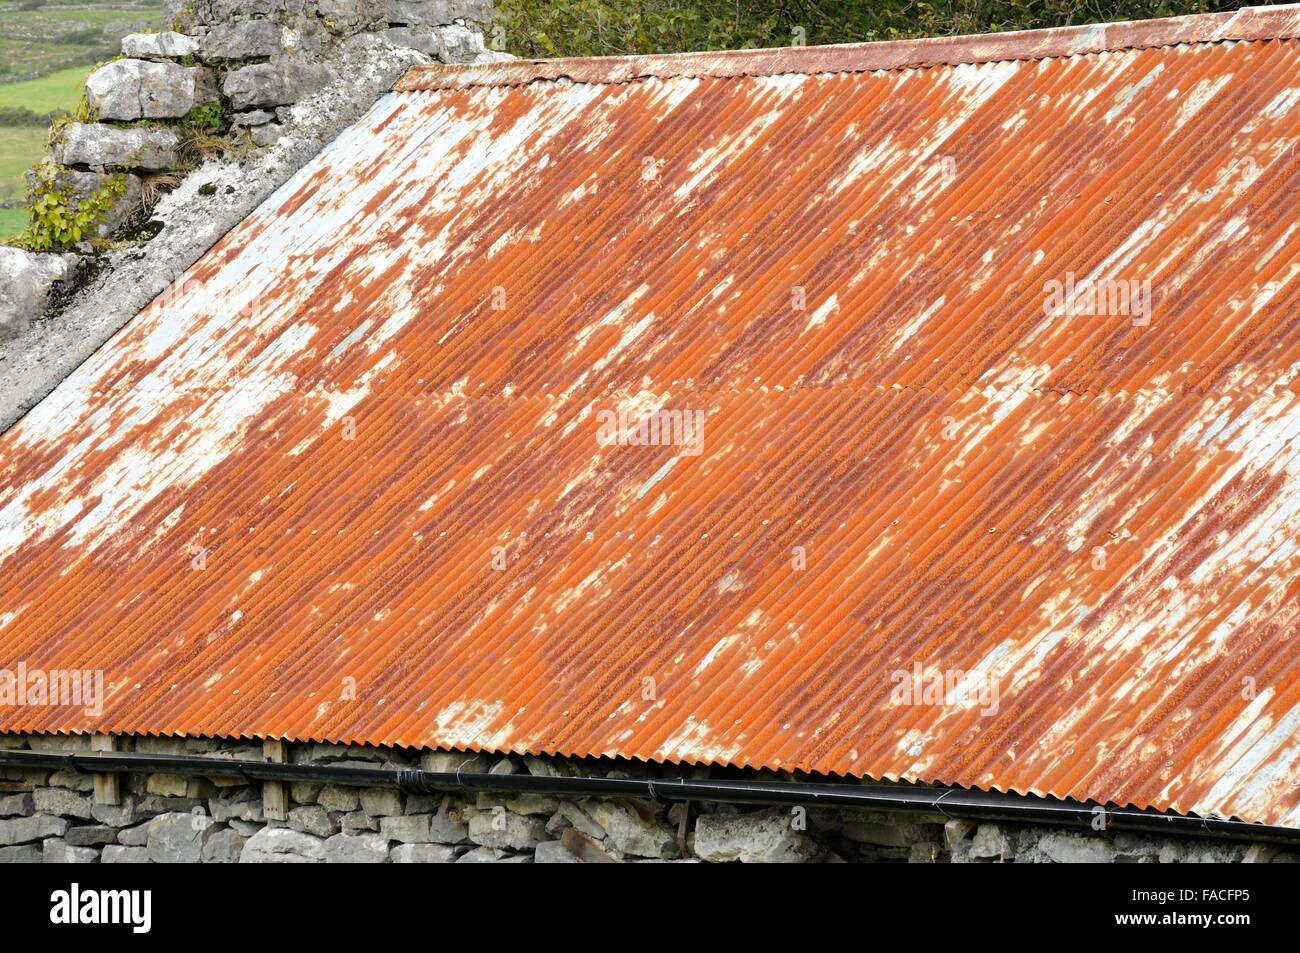 rostige Wellblech-Dach auf einem alten irischen Cottage Burren County Clare Irland Stockfoto